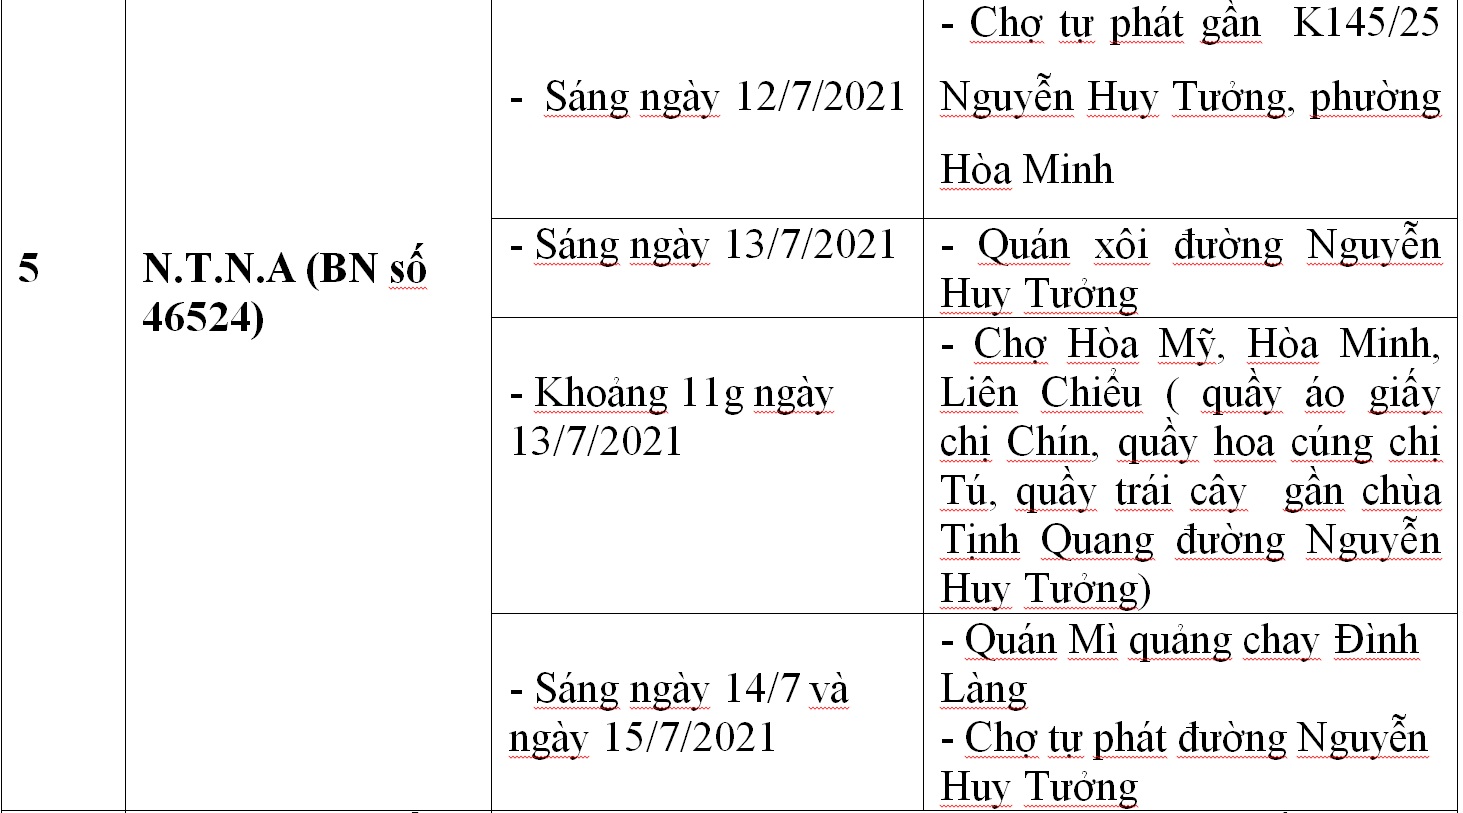 Công bố địa điểm liên quan 33 ca Covid-19 ở Đà Nẵng - Ảnh 6.